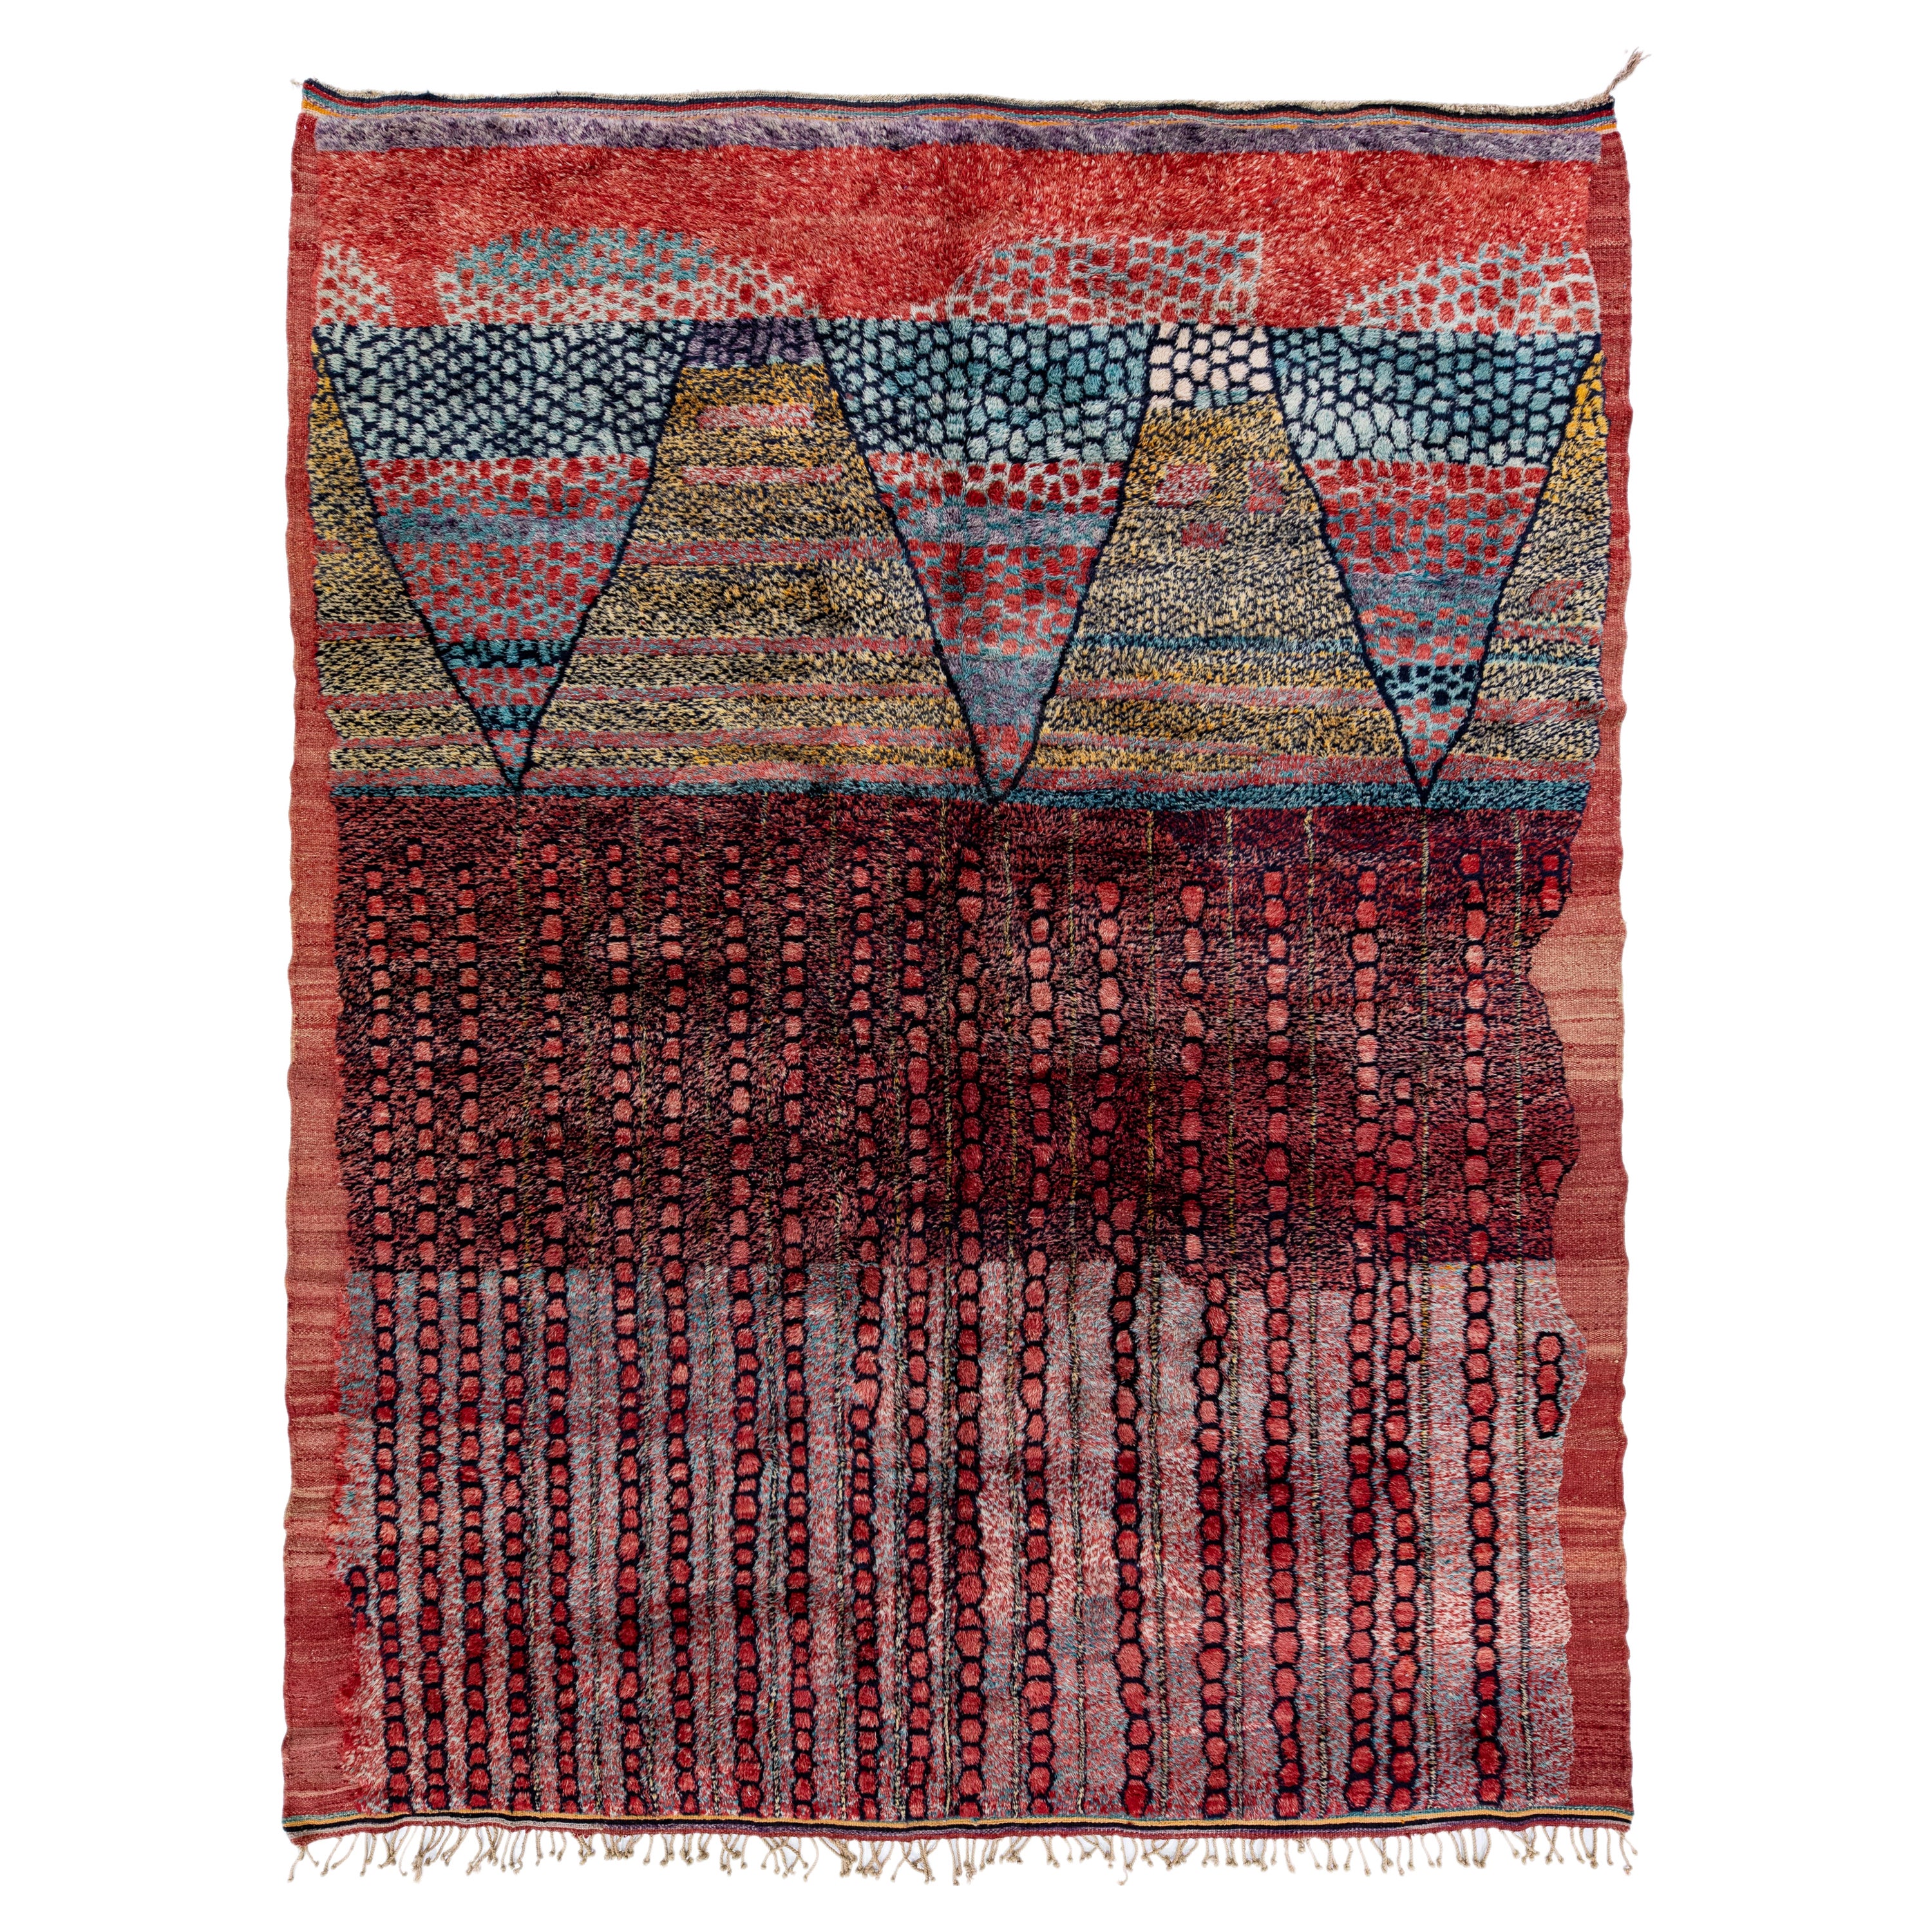 Tapis marocain moderne en laine multicolore, fait à la main, de taille normale, avec motif tribal